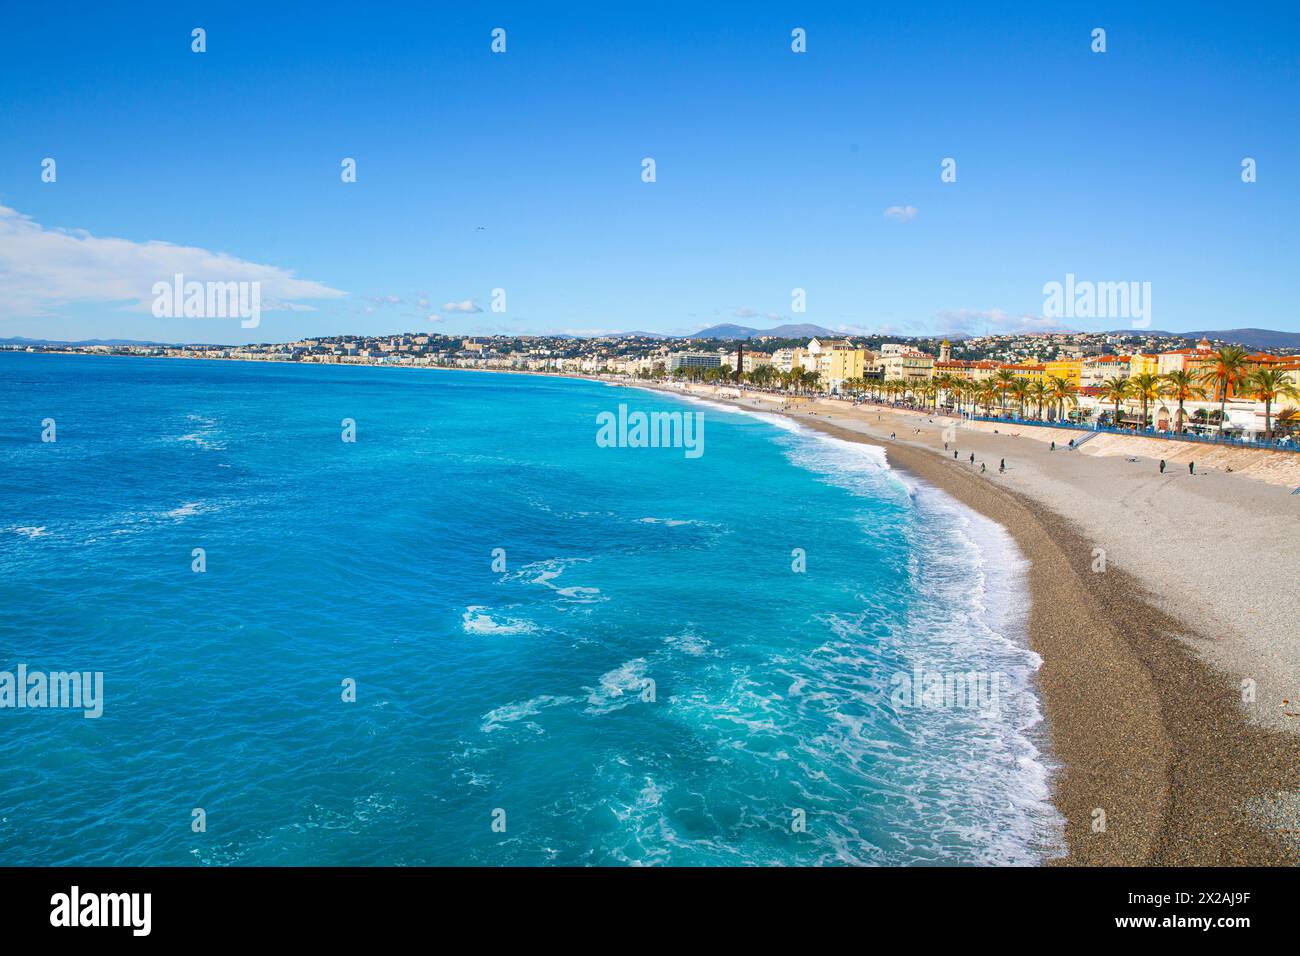 Splendida acqua acquamarina del Mar Mediterraneo a Nizza, costa Azzurra, Francia. Foto Stock